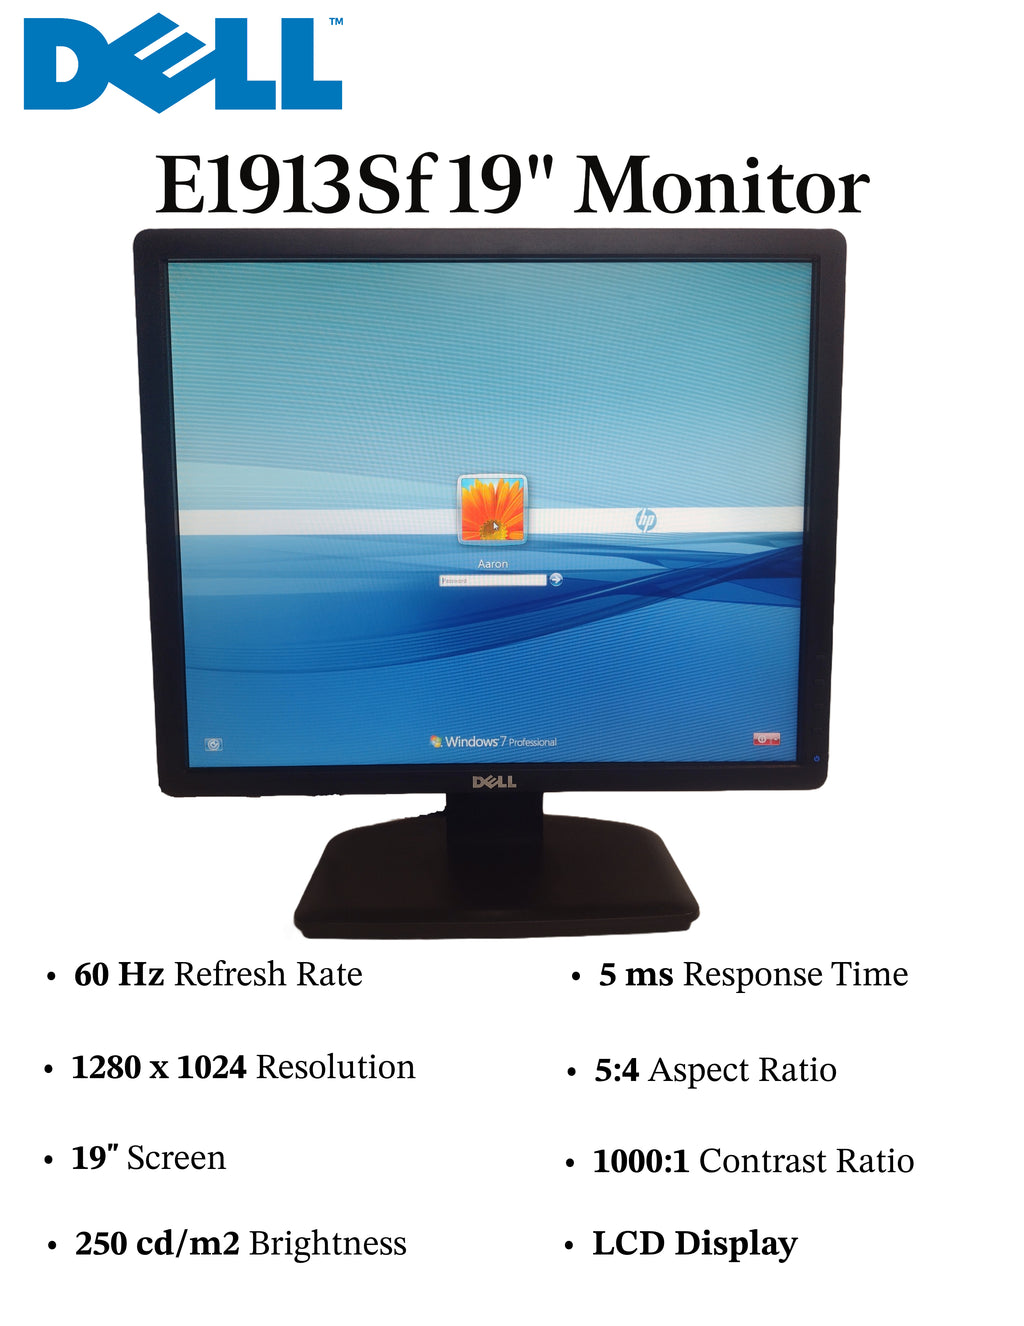 DELL E1913Sf 19" 1280 x 1024 5:4 LCD Monitor